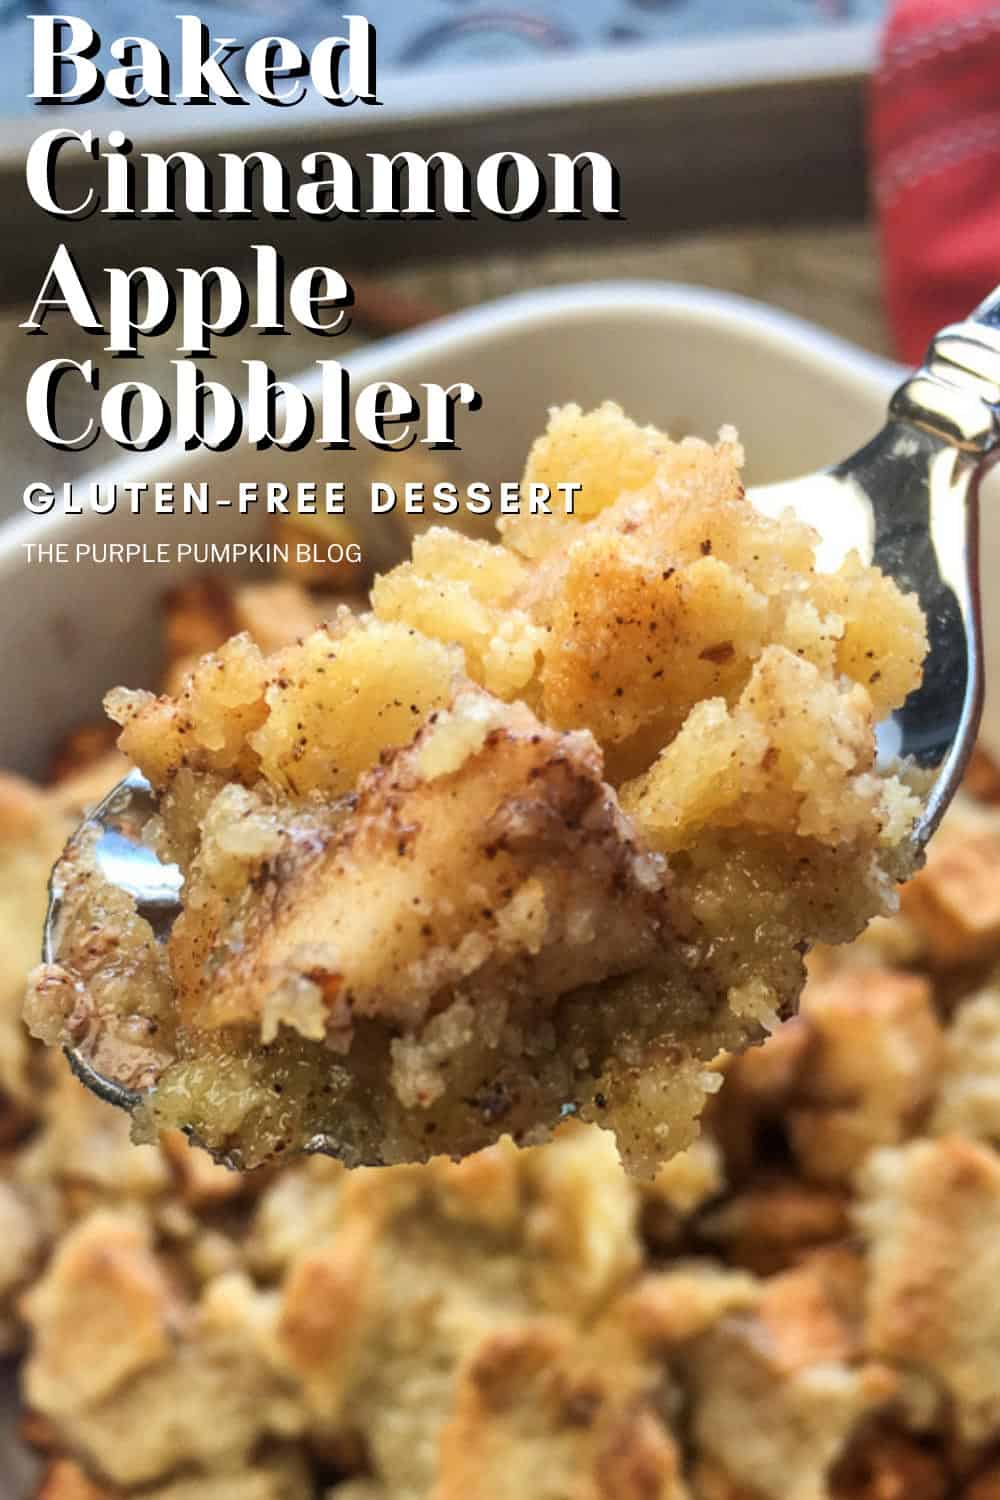 Baked-Cinnamon-Apple-Cobbler-Gluten-Free-Dessert